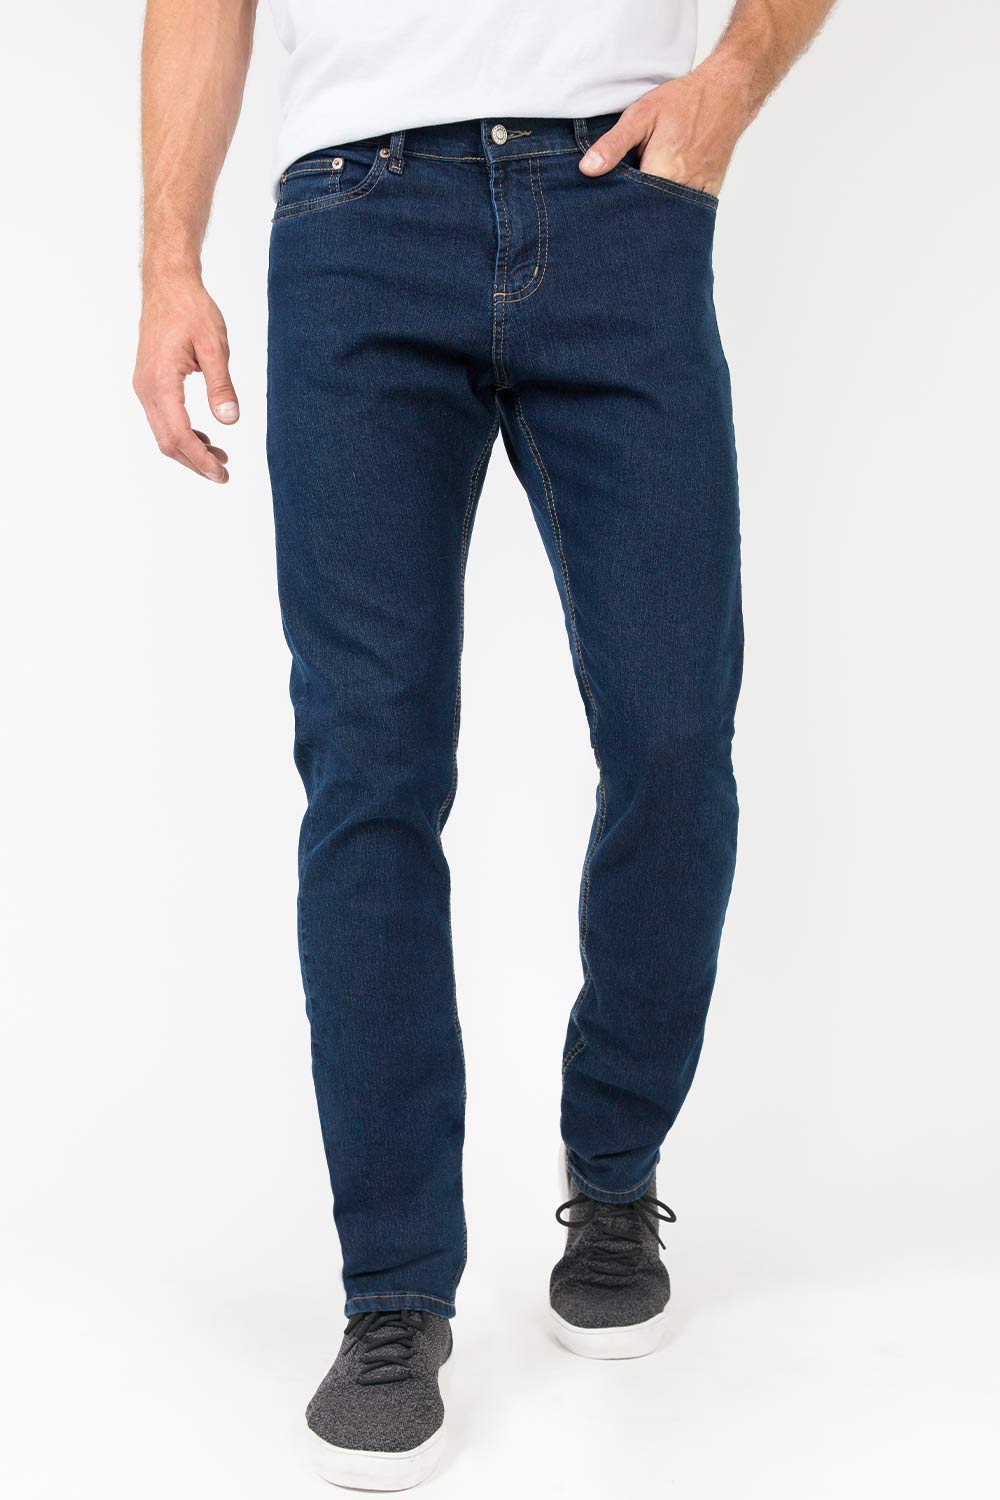 Calça Masculina Reta Jeans - Moda Online - Calça Jeans; Blusas; Blazers e  Mais